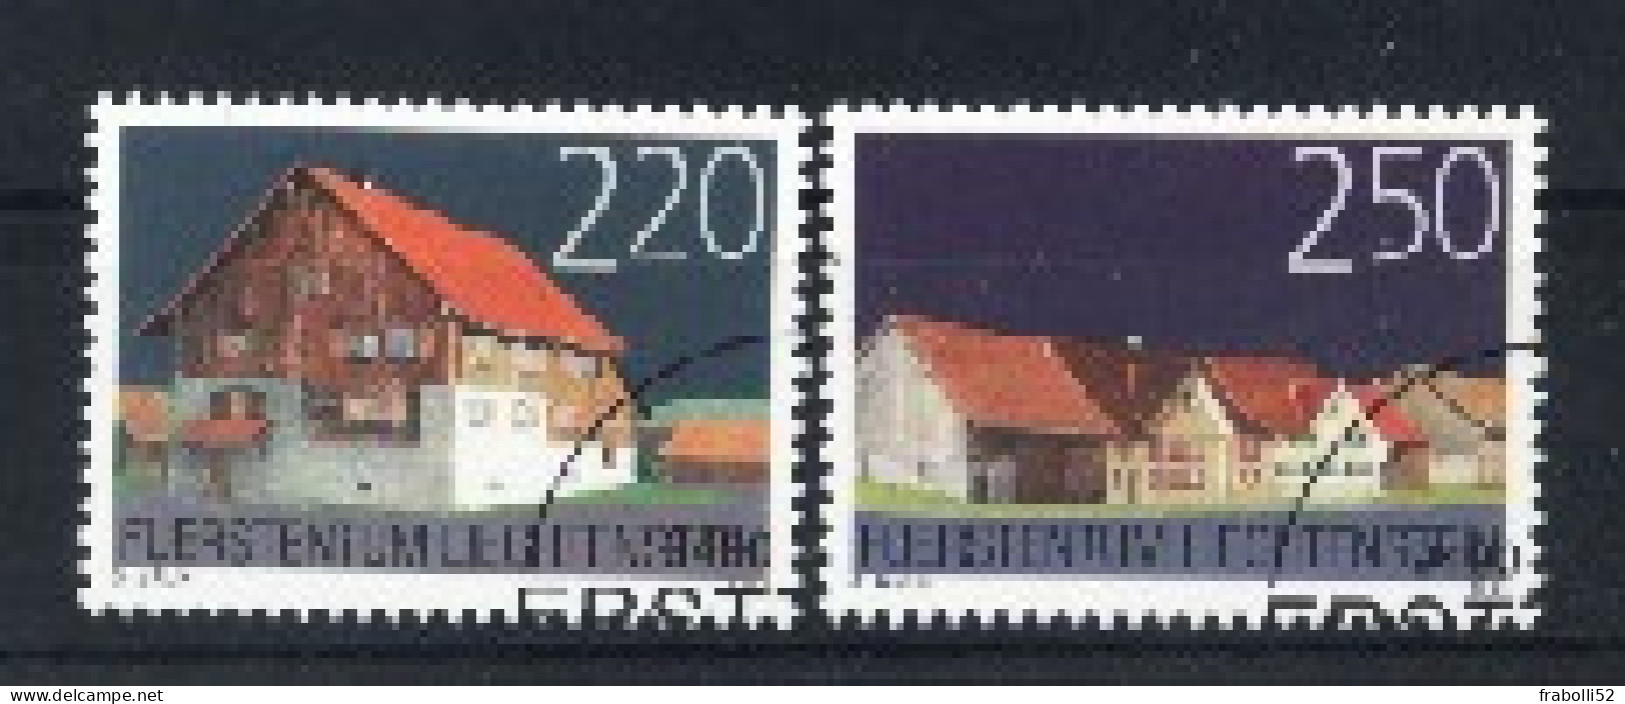 Liechtenstein Usati:  N. 1296-7  Lusso - Oblitérés